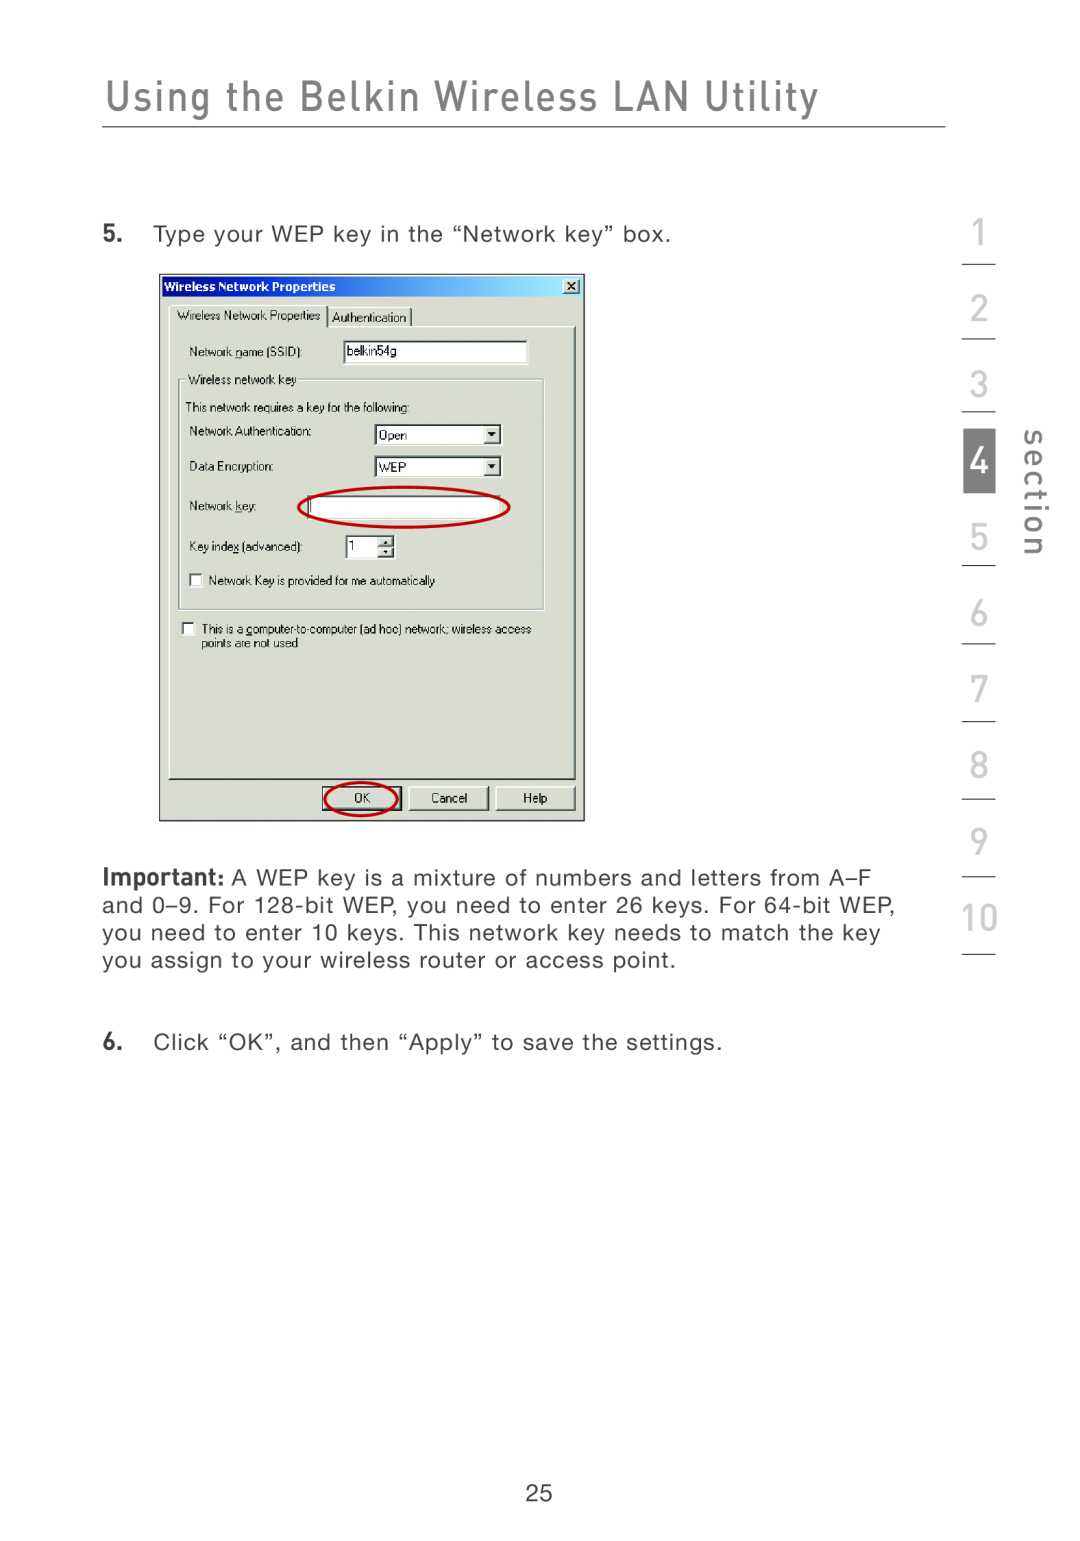 Belkin F5D7011 manual Using the Belkin Wireless LAN Utility, section, Type your WEP key in the “Network key” box 